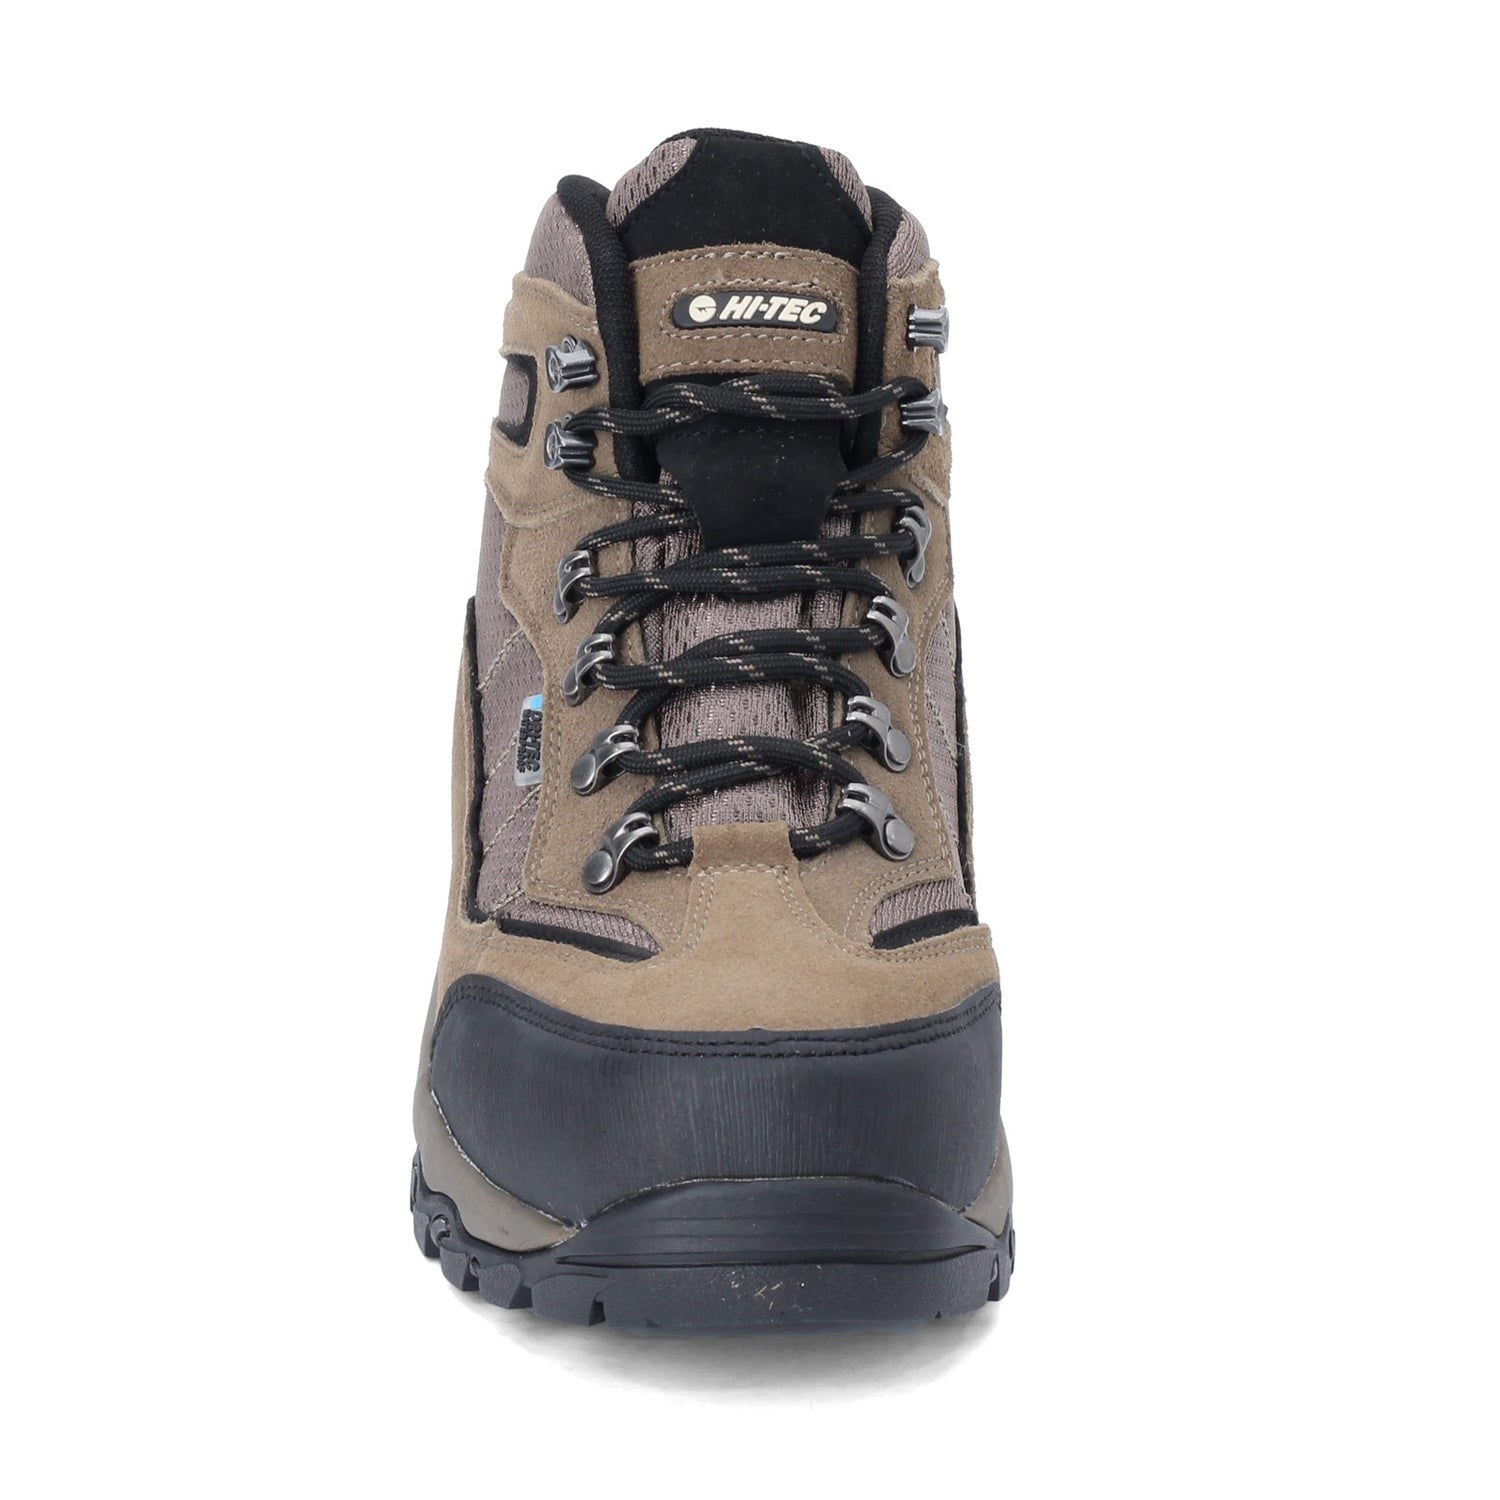 HI-TEC Men's High Rise Hiking Boots